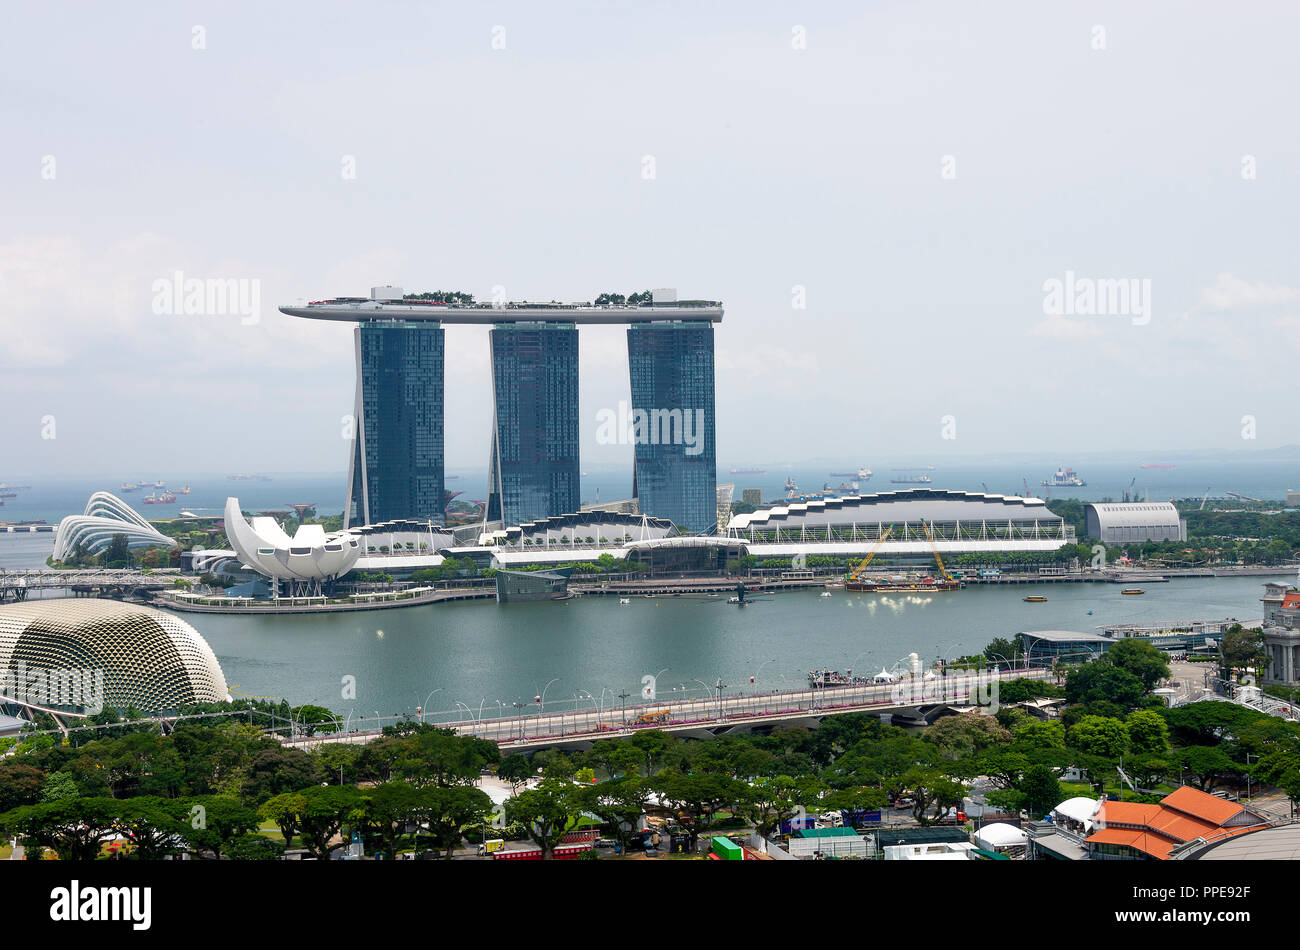 Vista aérea del hotel Marina Bay Sands, el Museo de las Artes y las Ciencias, uno de los teatros Esplanade junto a la bahía y los jardines junto a la bahía Singapur Asia Foto de stock